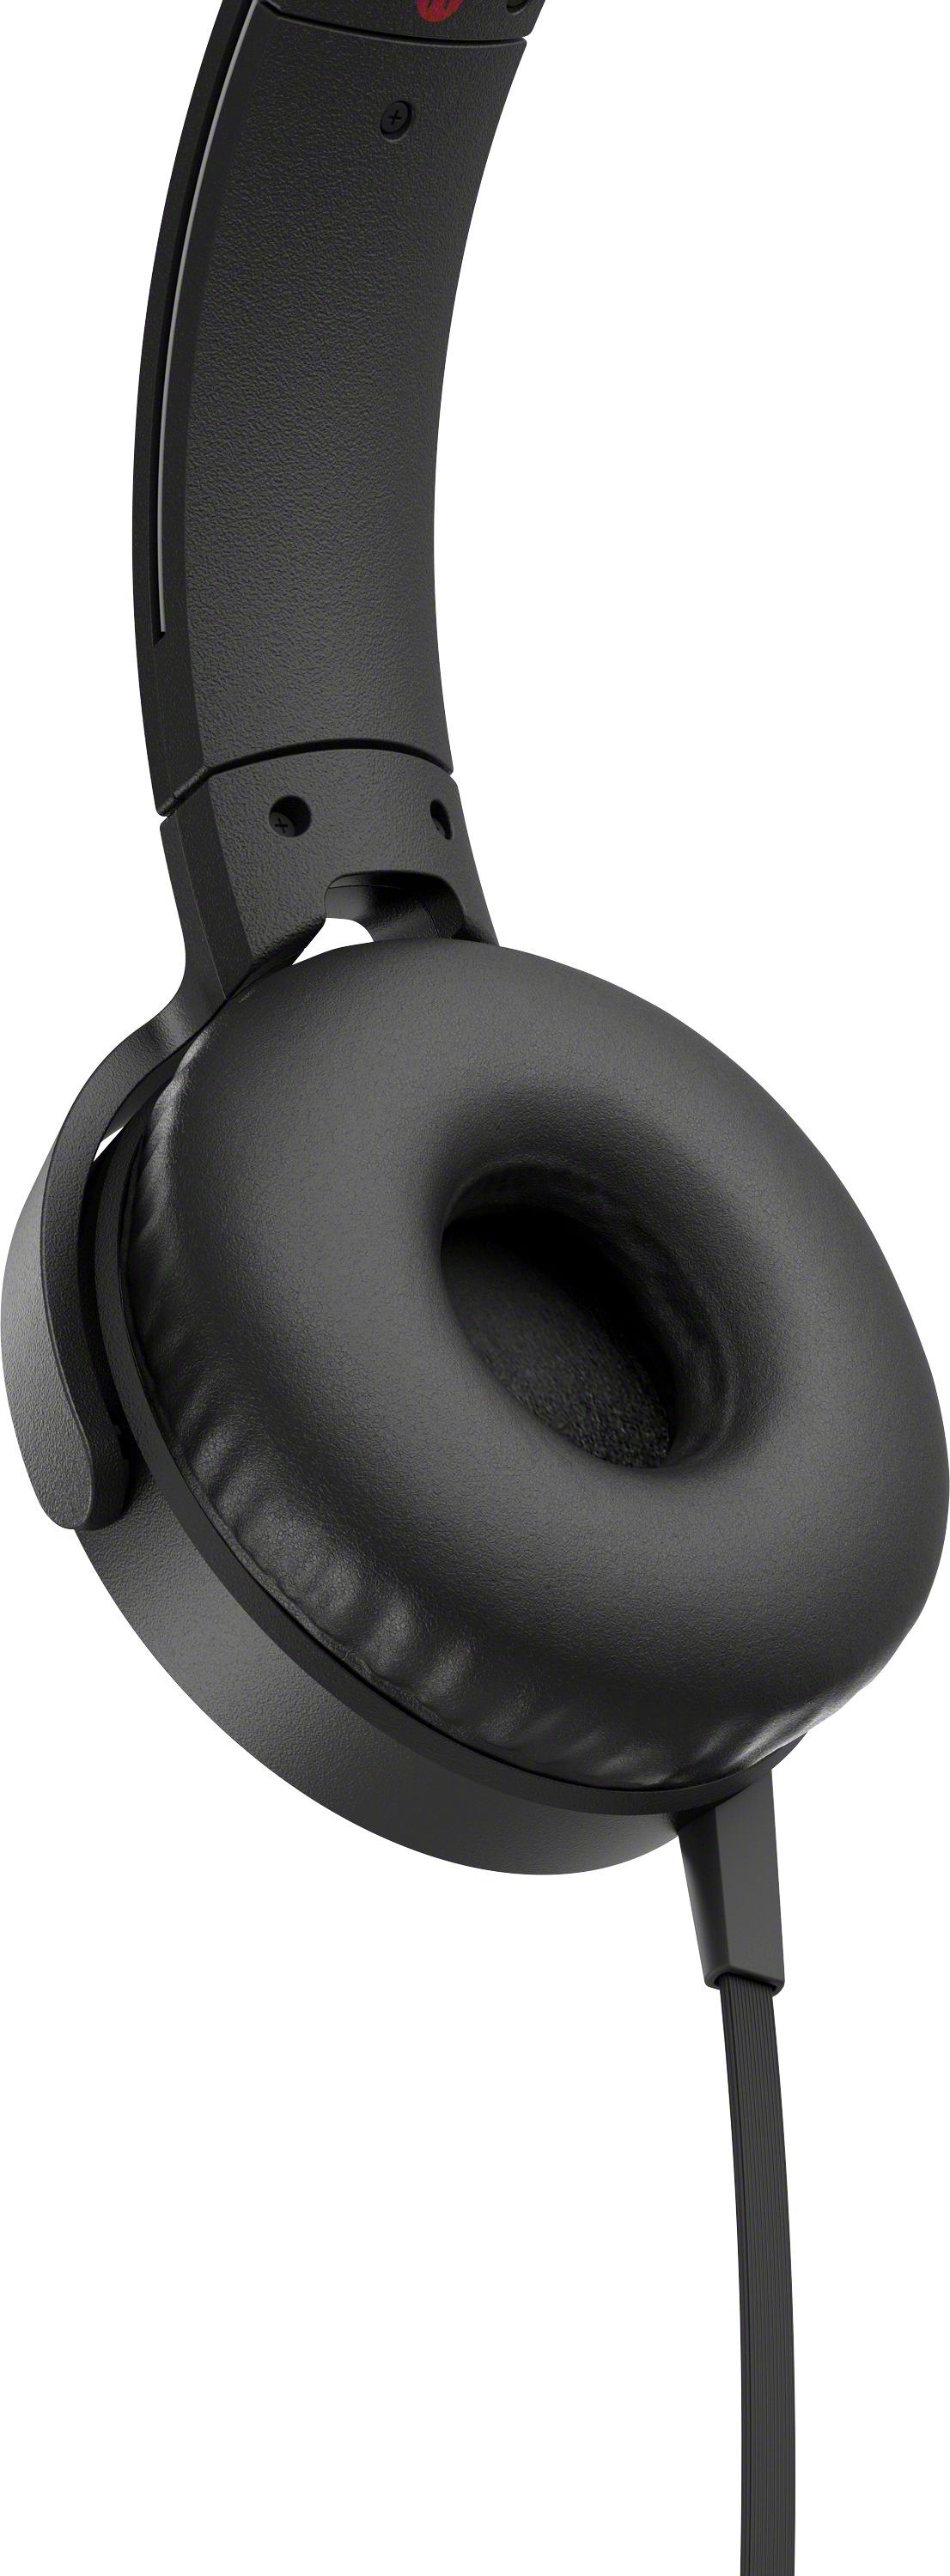 オーディオ機器 ヘッドフォン Best Buy: Sony XB550AP Extra Bass Wired On-Ear Headphones Black 